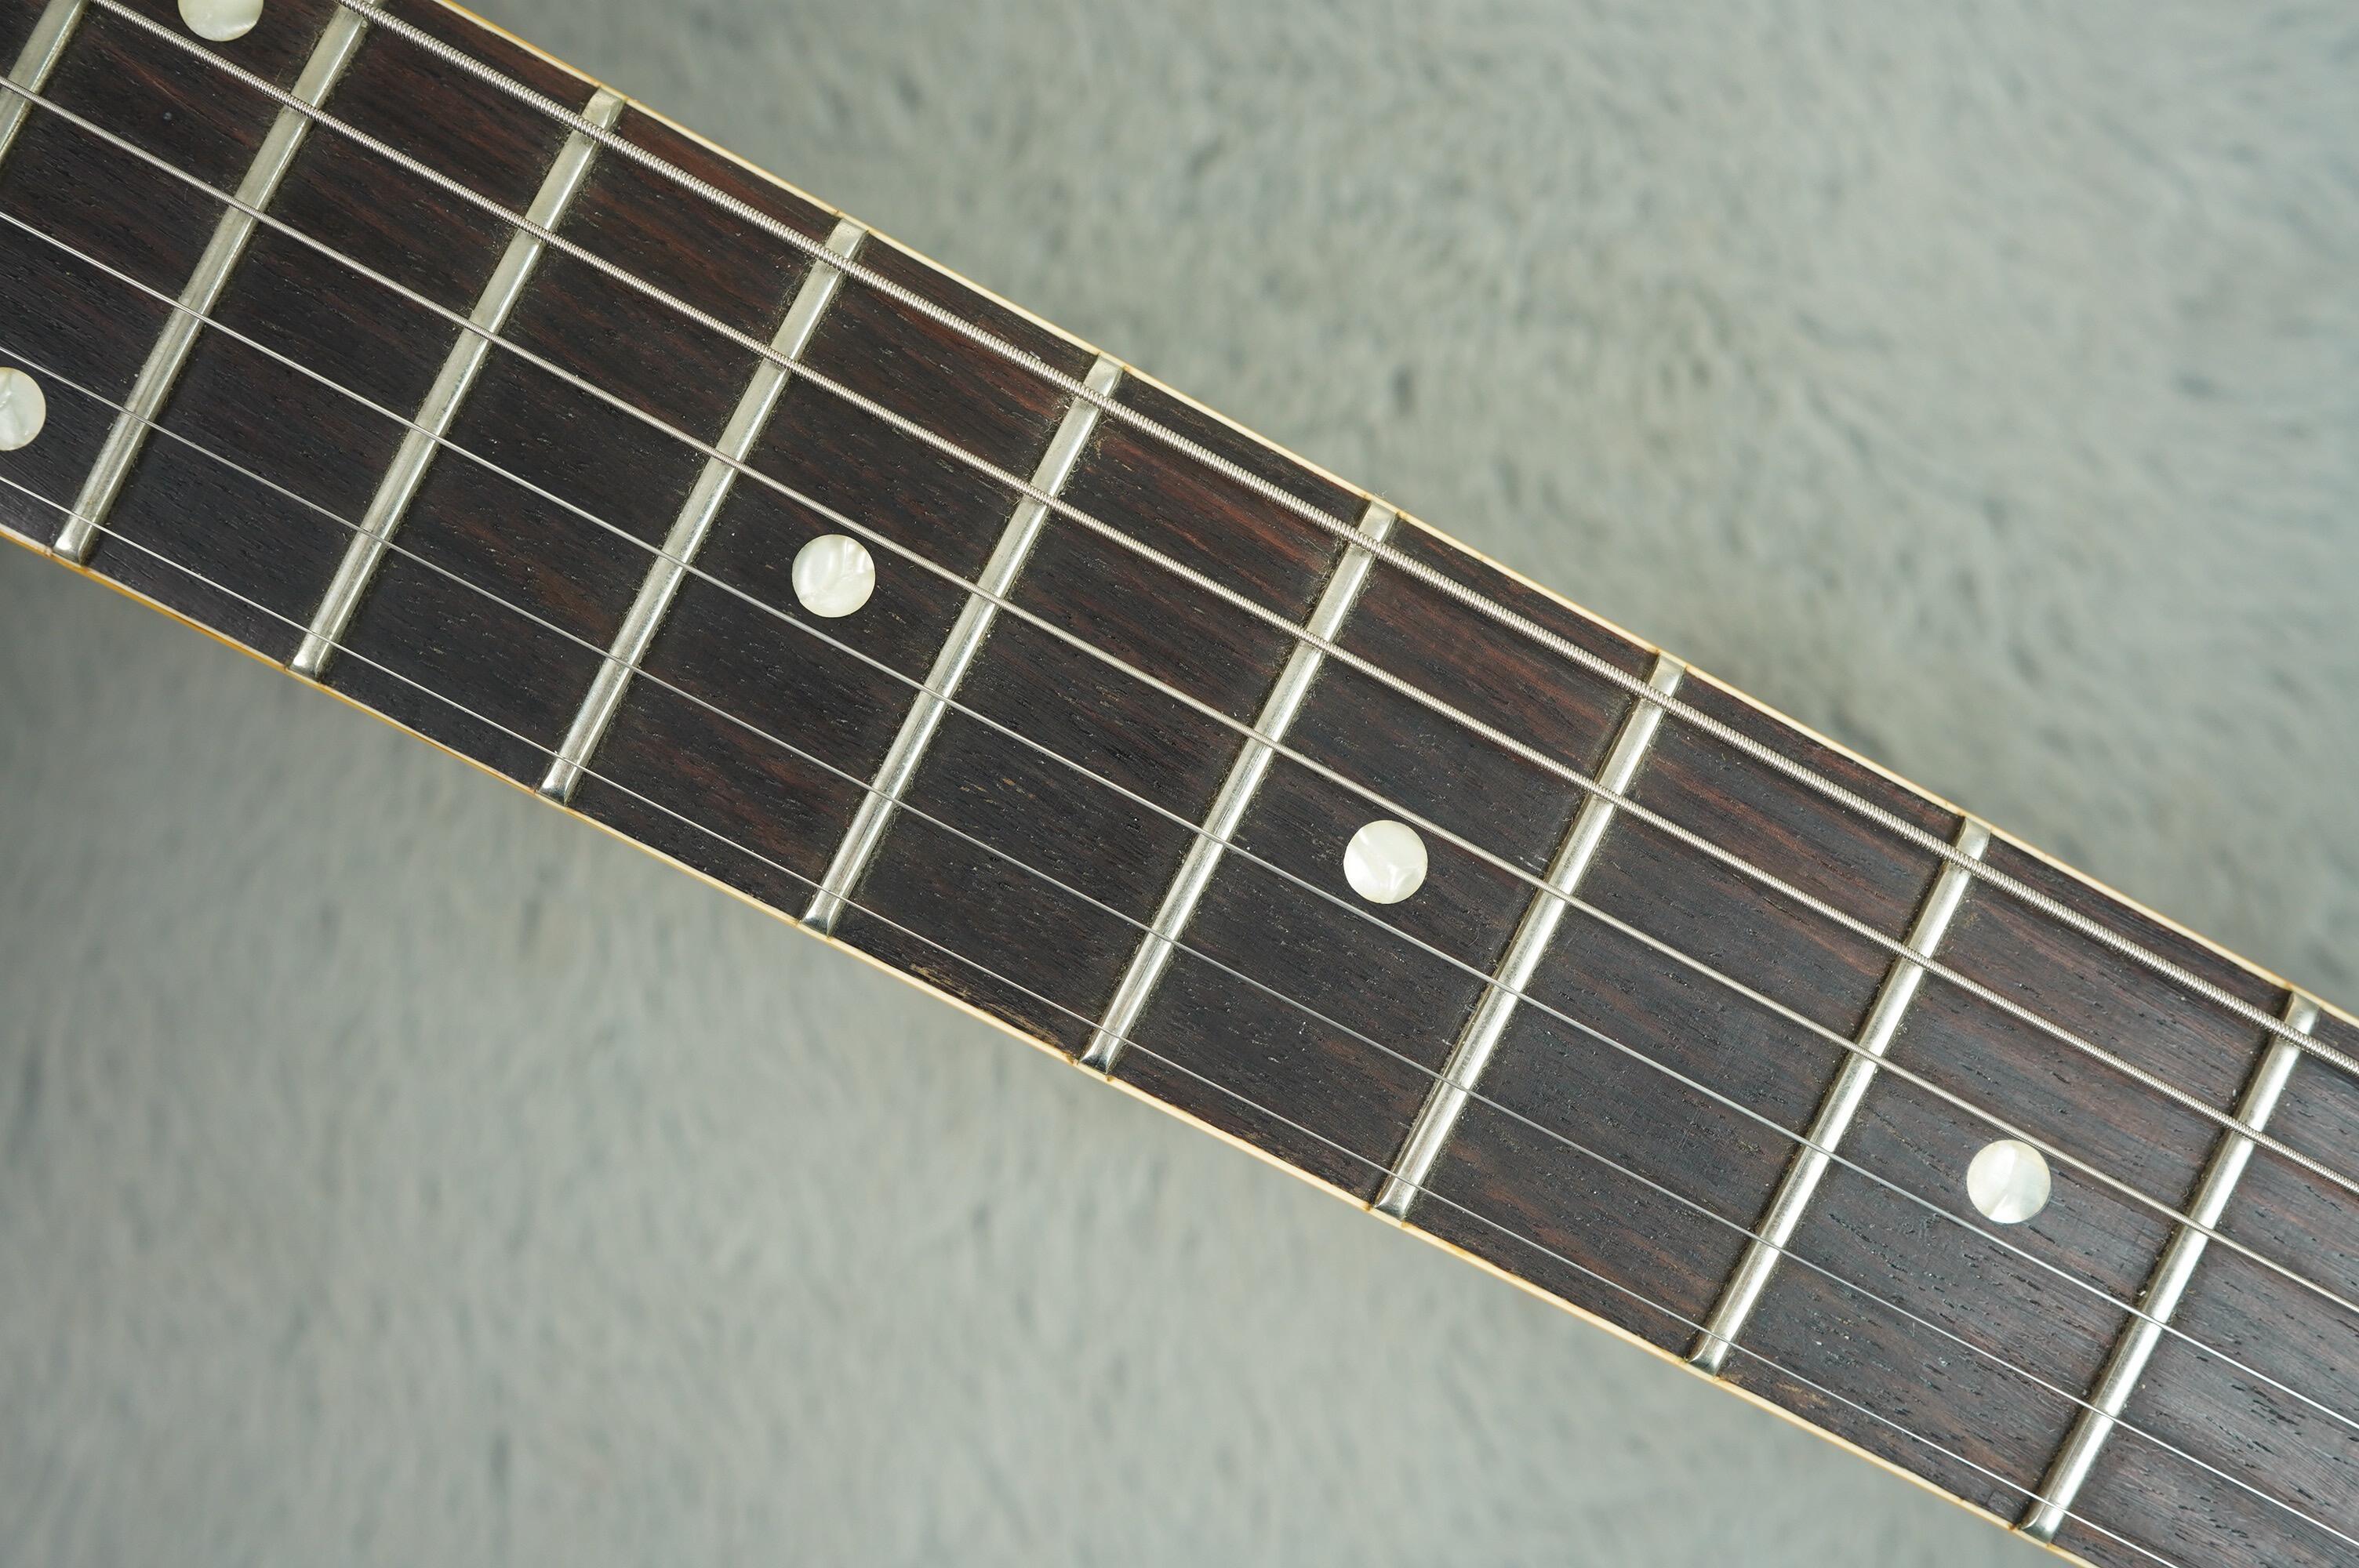 2015 Gibson Custom Shop ES-330 FW15VNNH1